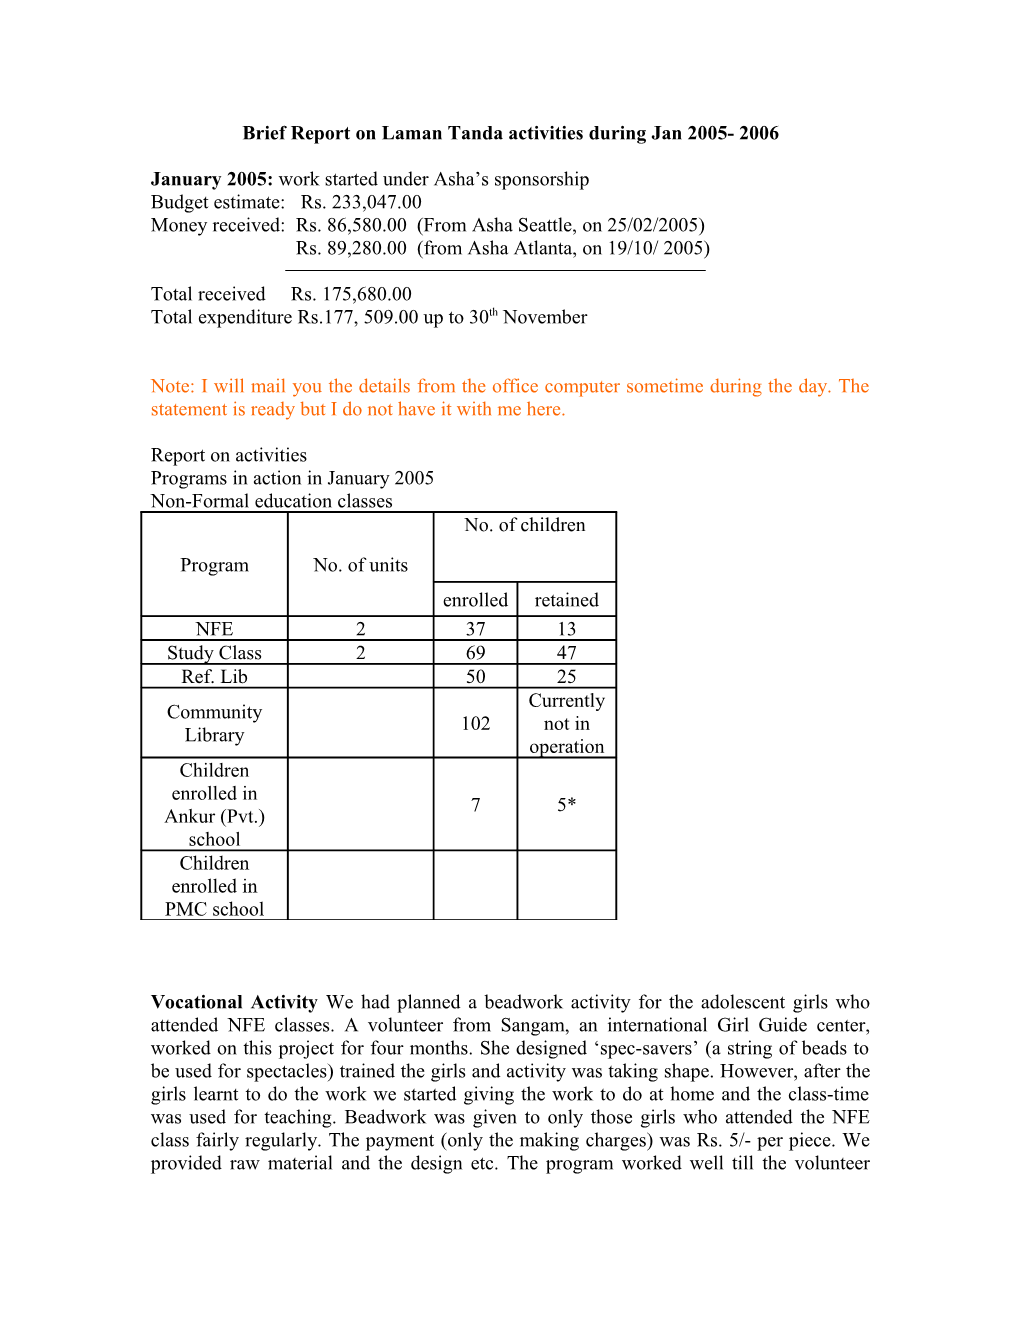 Brief Report on Laman Tanda Activities During Jan 2005- 2006